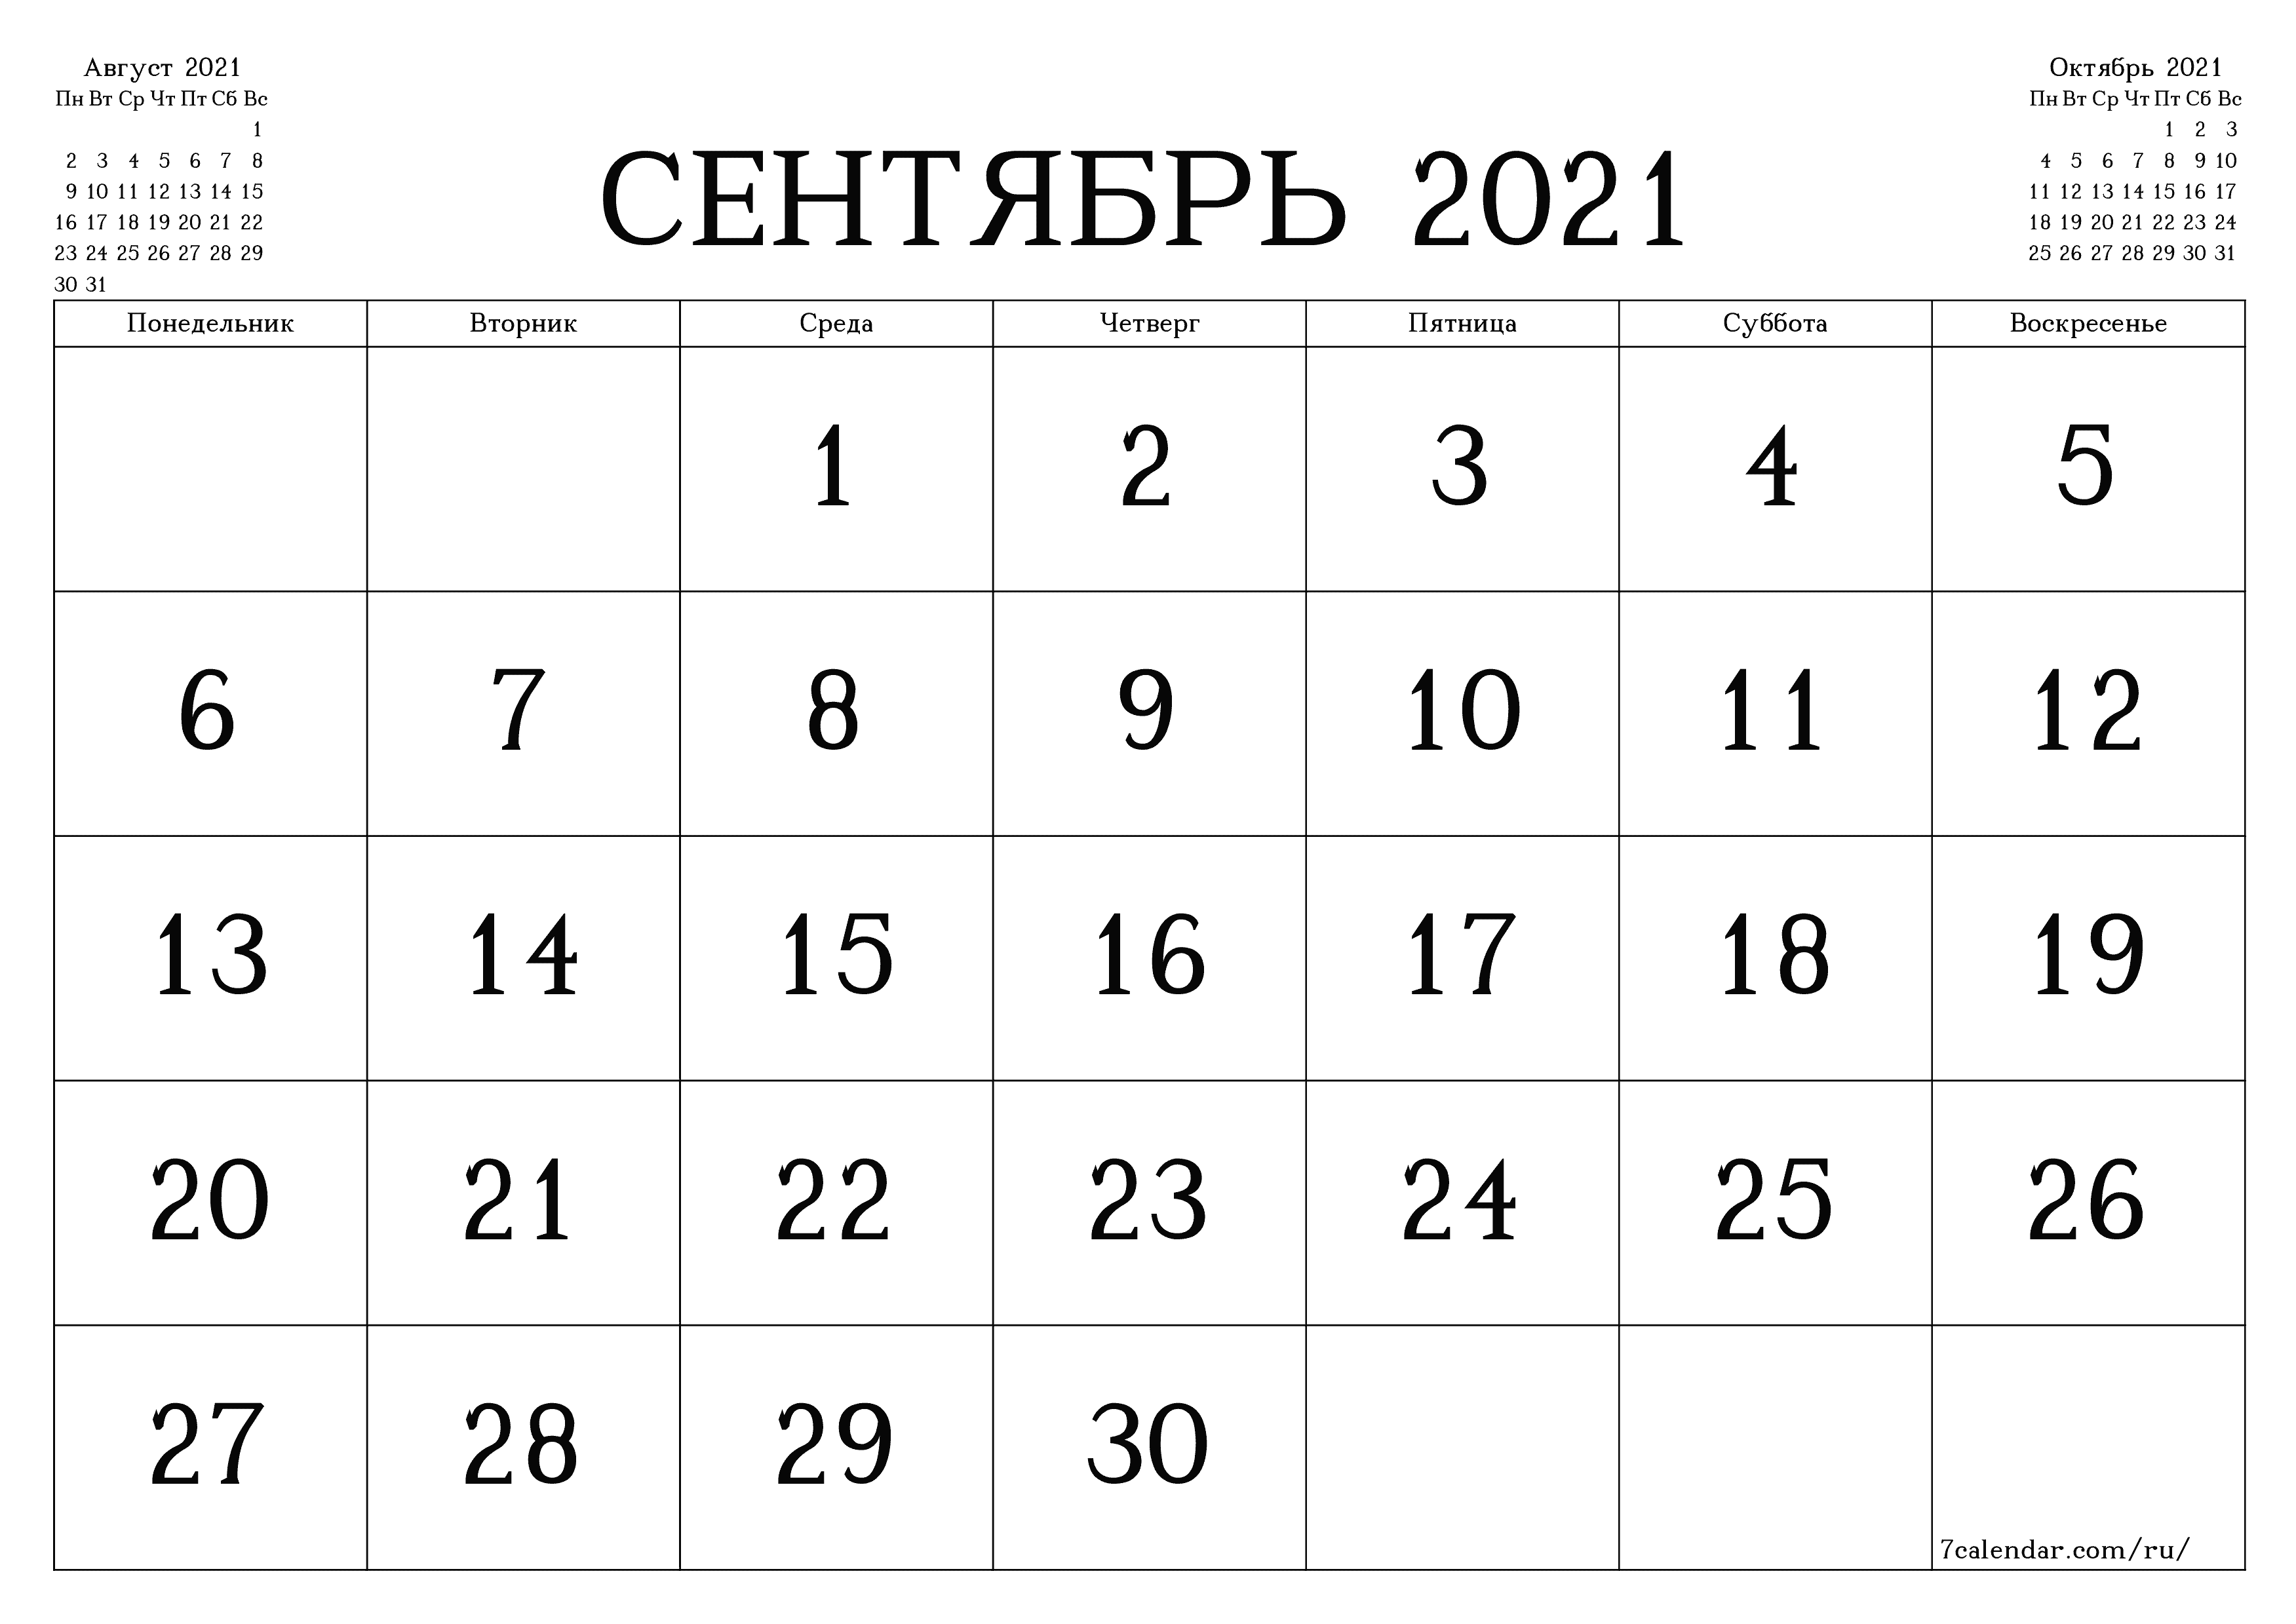 Пустой ежемесячный календарь-планер на месяц Сентябрь 2021 с заметками расп...